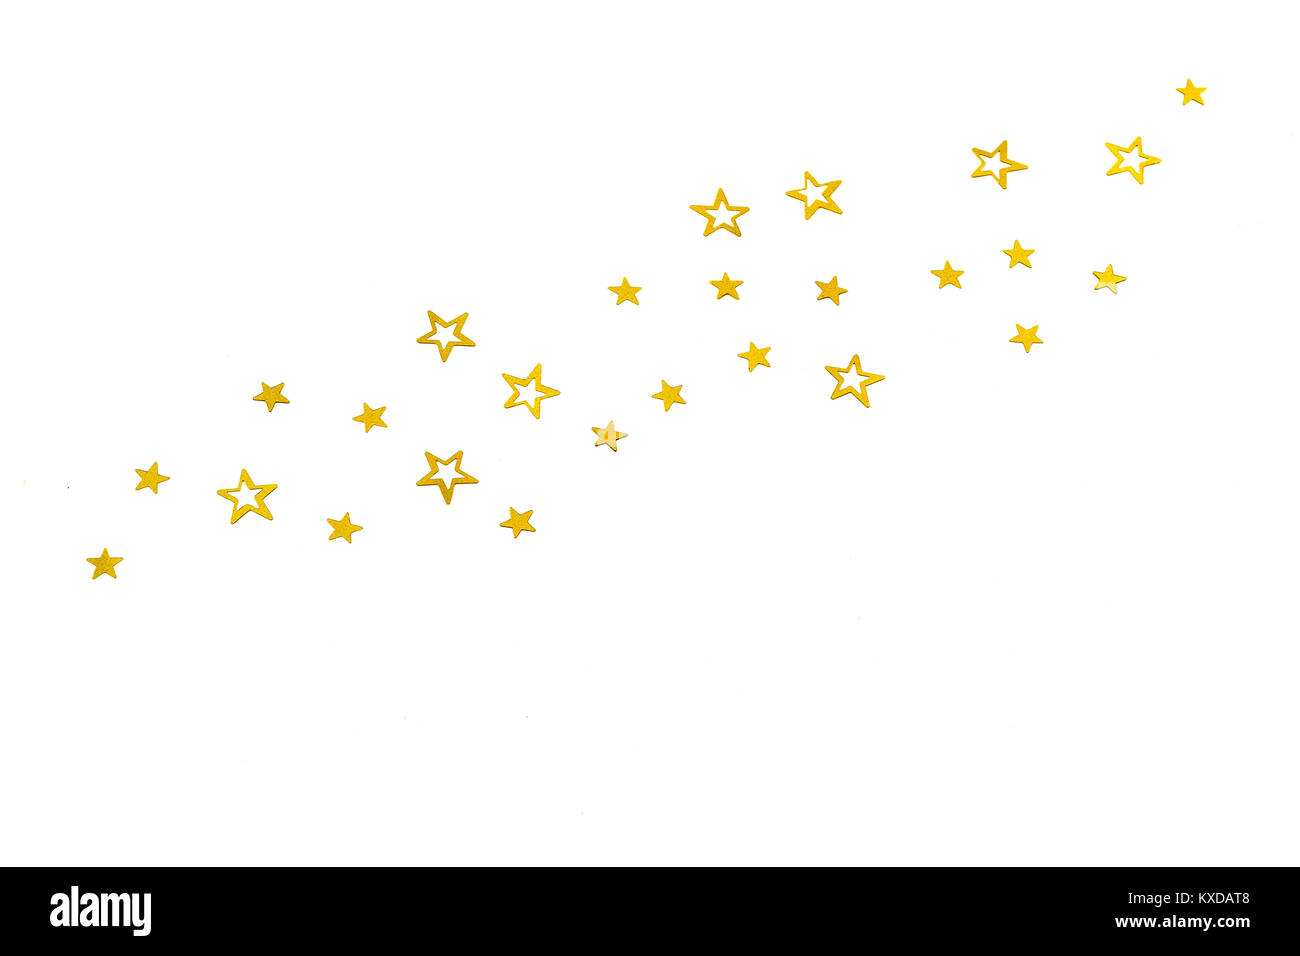 Les cascades de particules stars glitter doré sur fond blanc,bonne année concept de vacances Banque D'Images